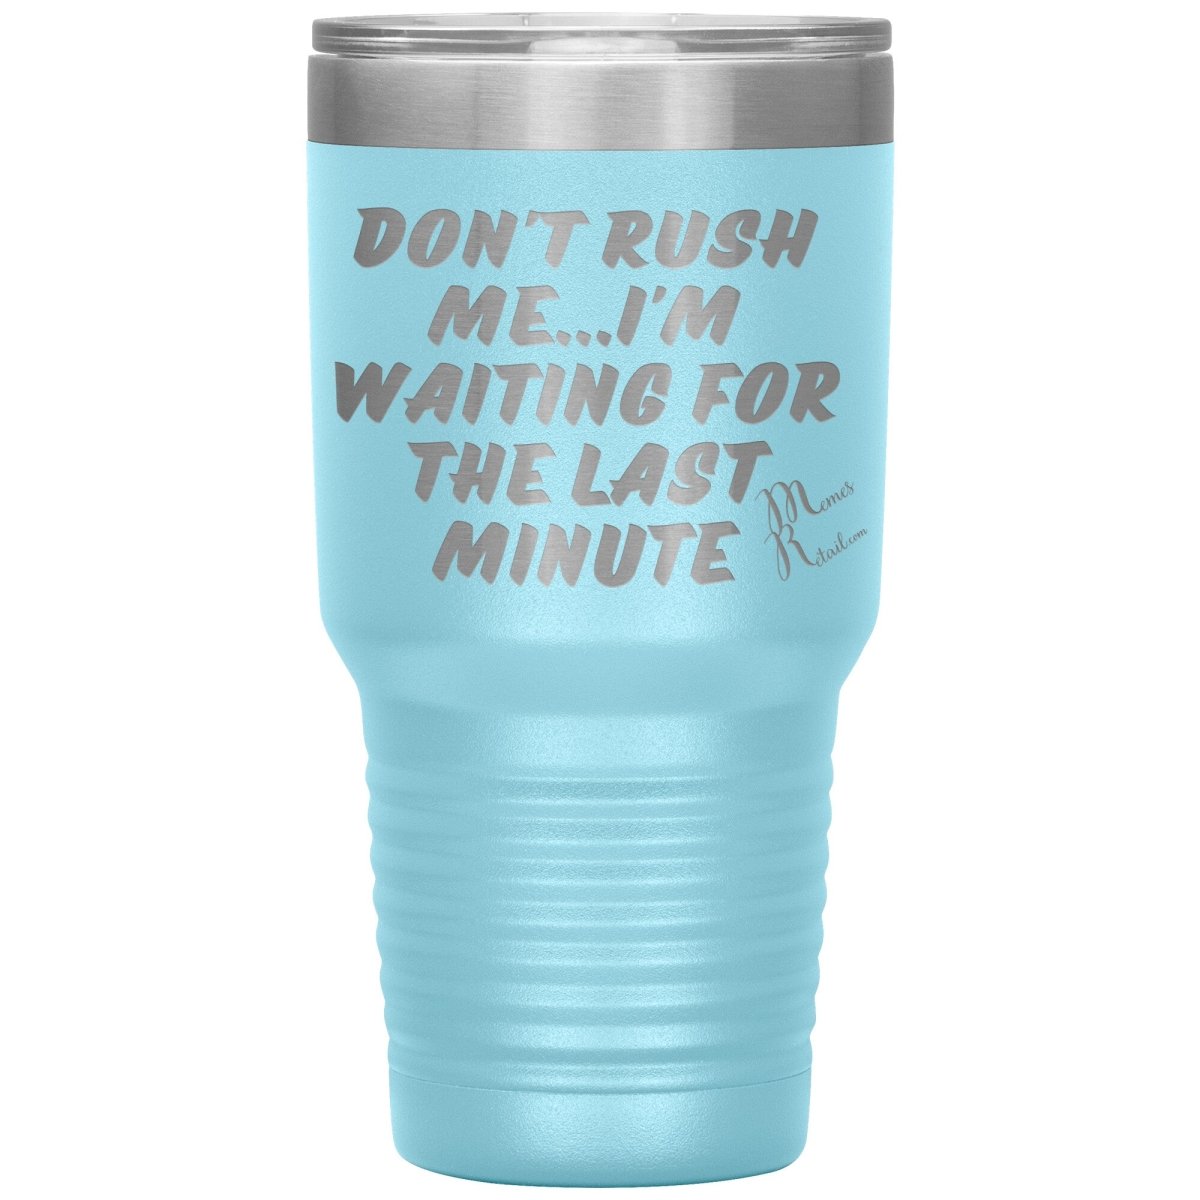 Don't Rush Me... I'm Waiting For The Last Minute Tumbers, 30oz Insulated Tumbler / Light Blue - MemesRetail.com